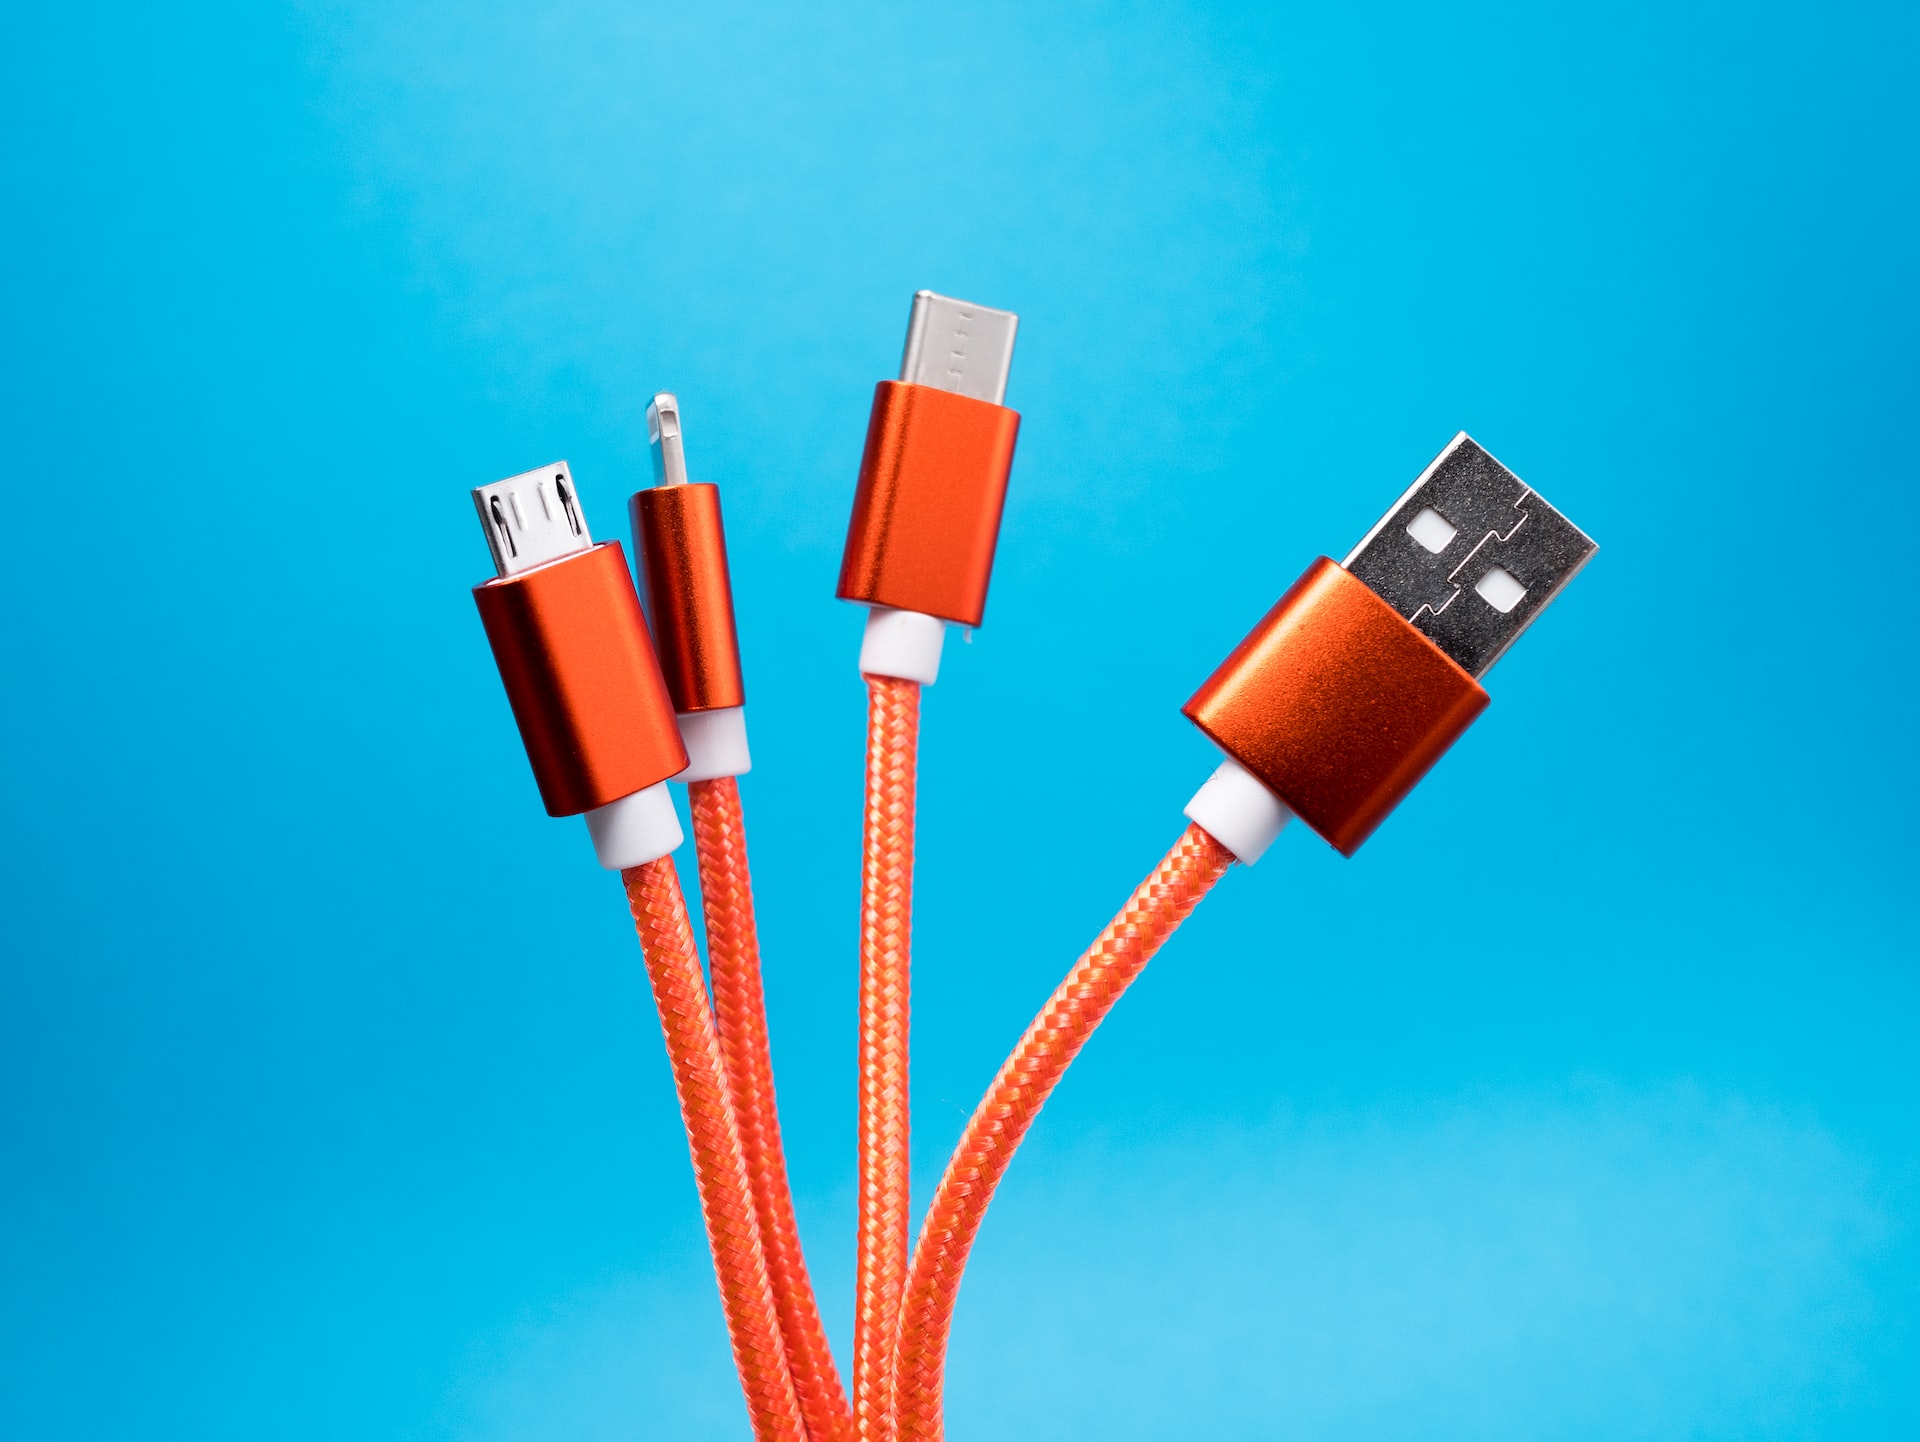 Imagem mostra vários cabos USB, simbolizando a evolução da tecnologia até o atual USB 4